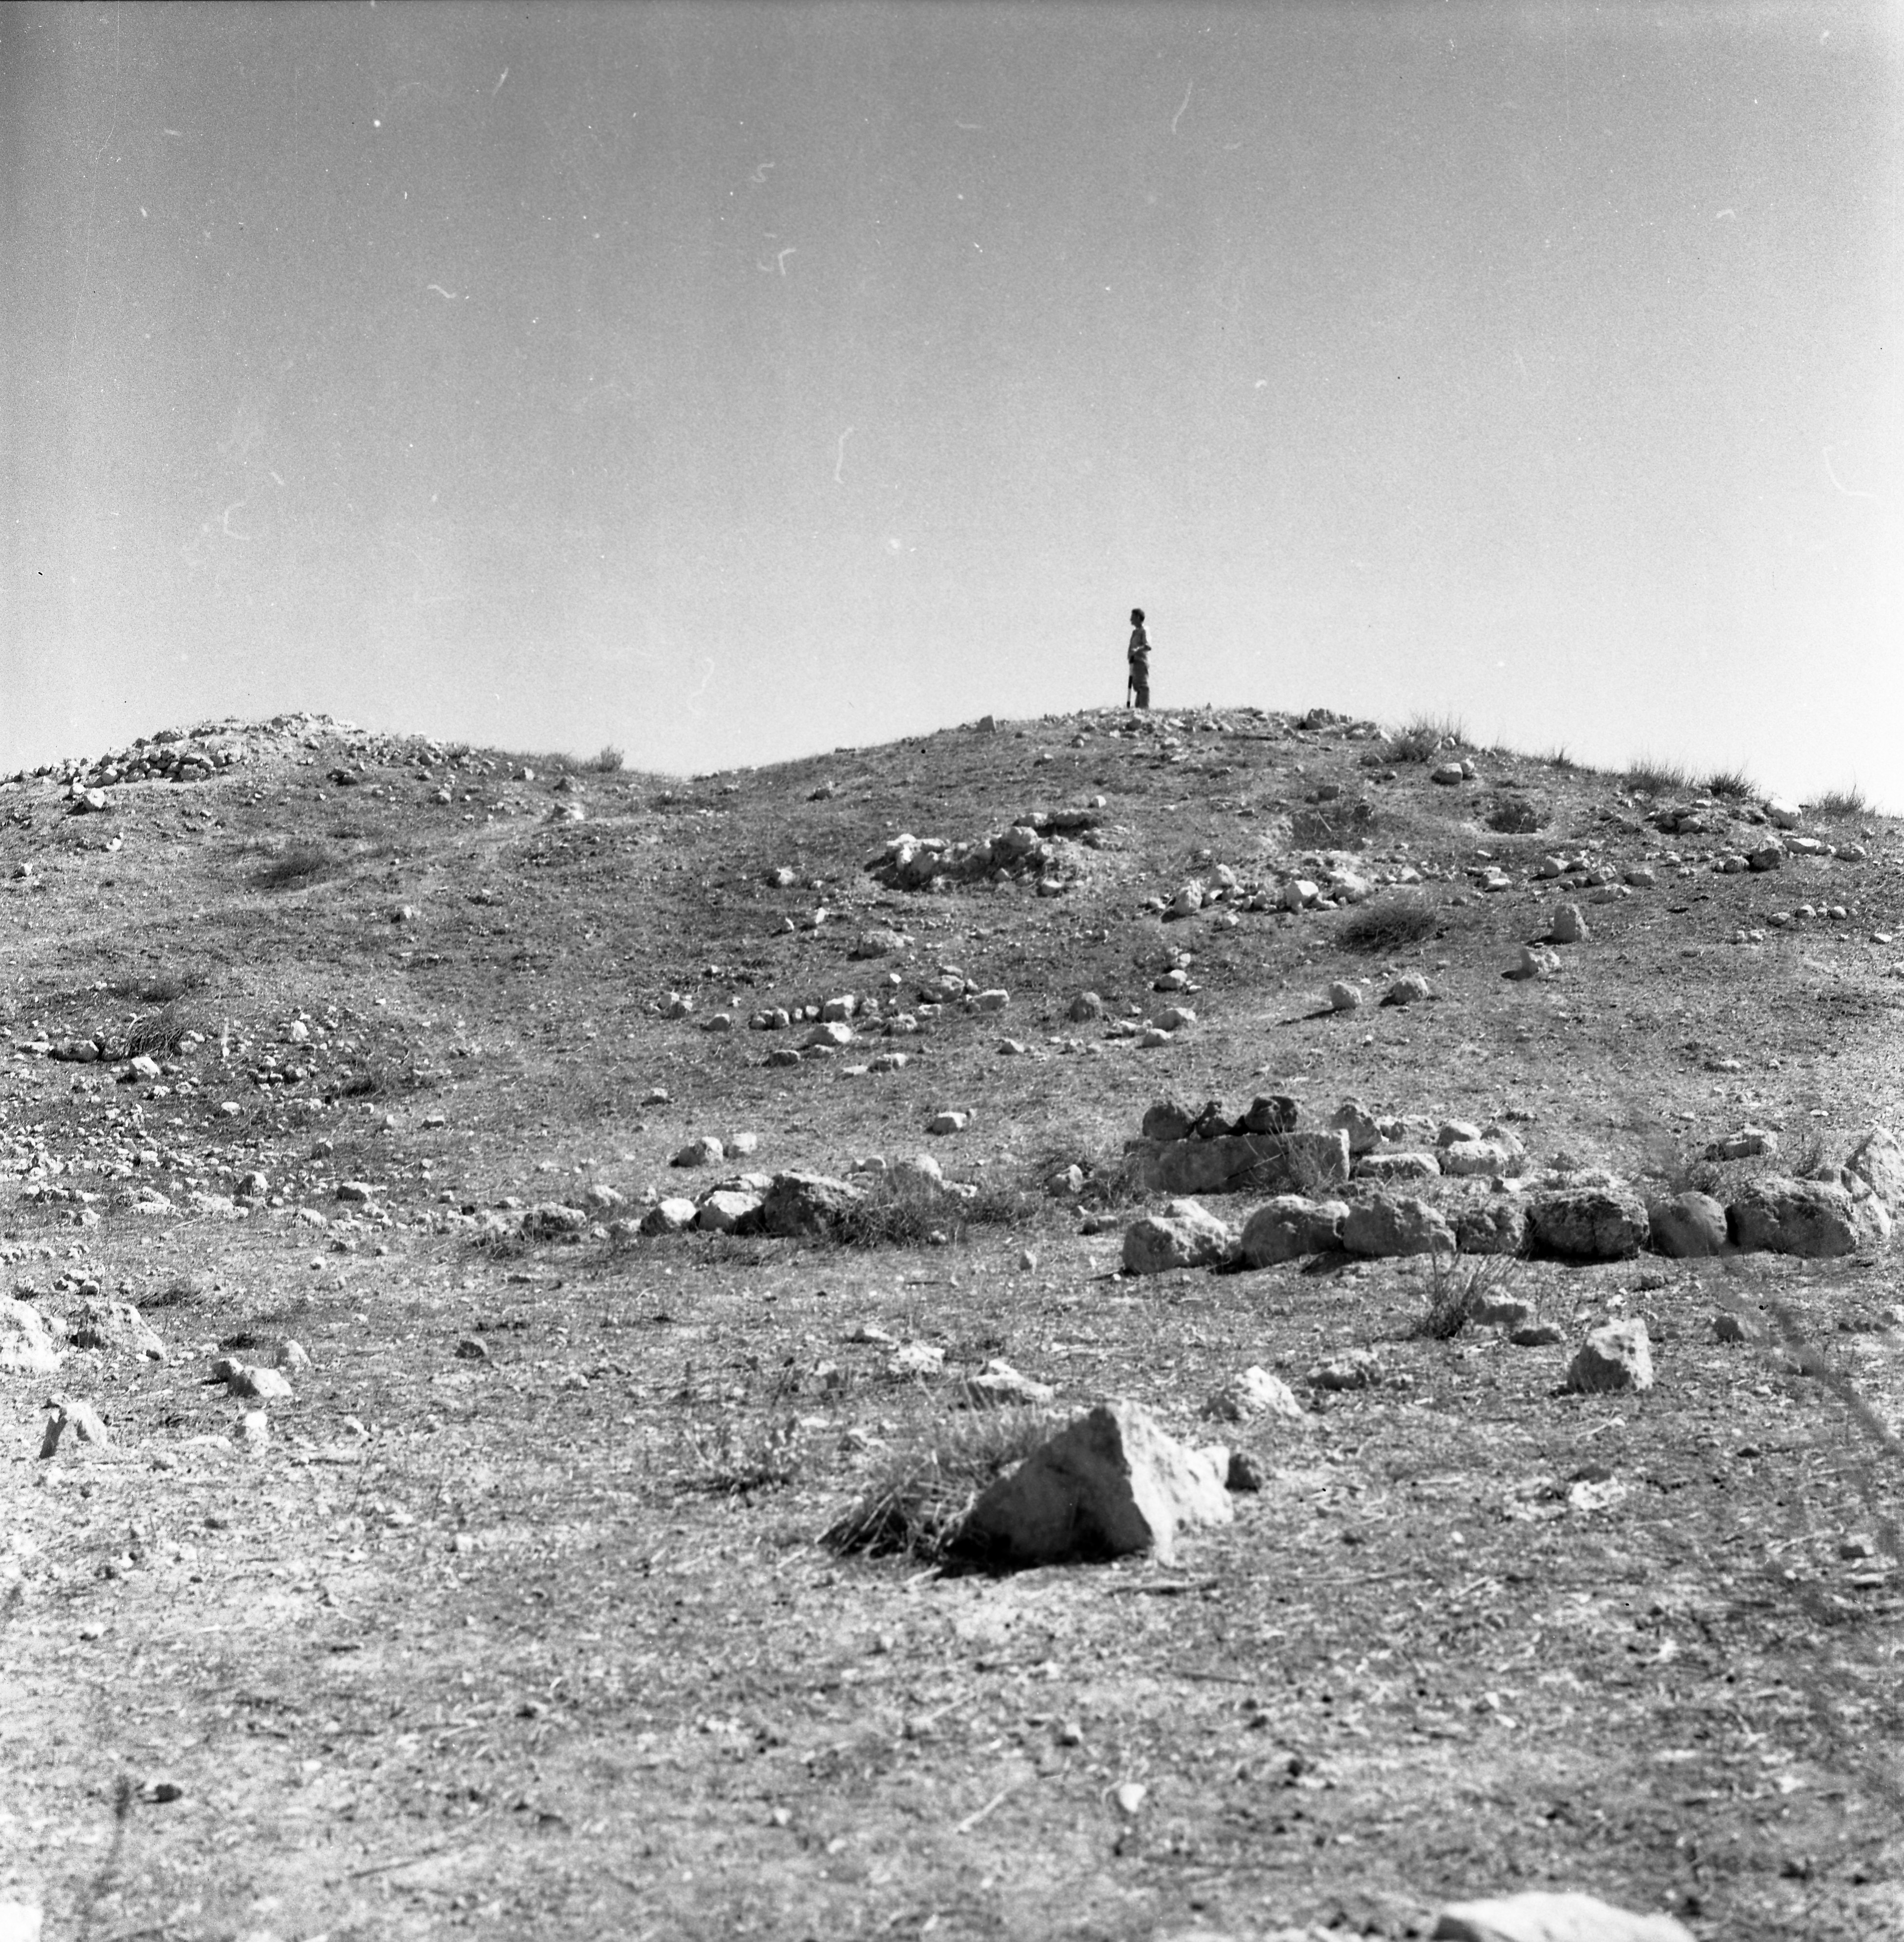  סקר ארכיאולוגי, תל א-סאפי, יולי; 1960